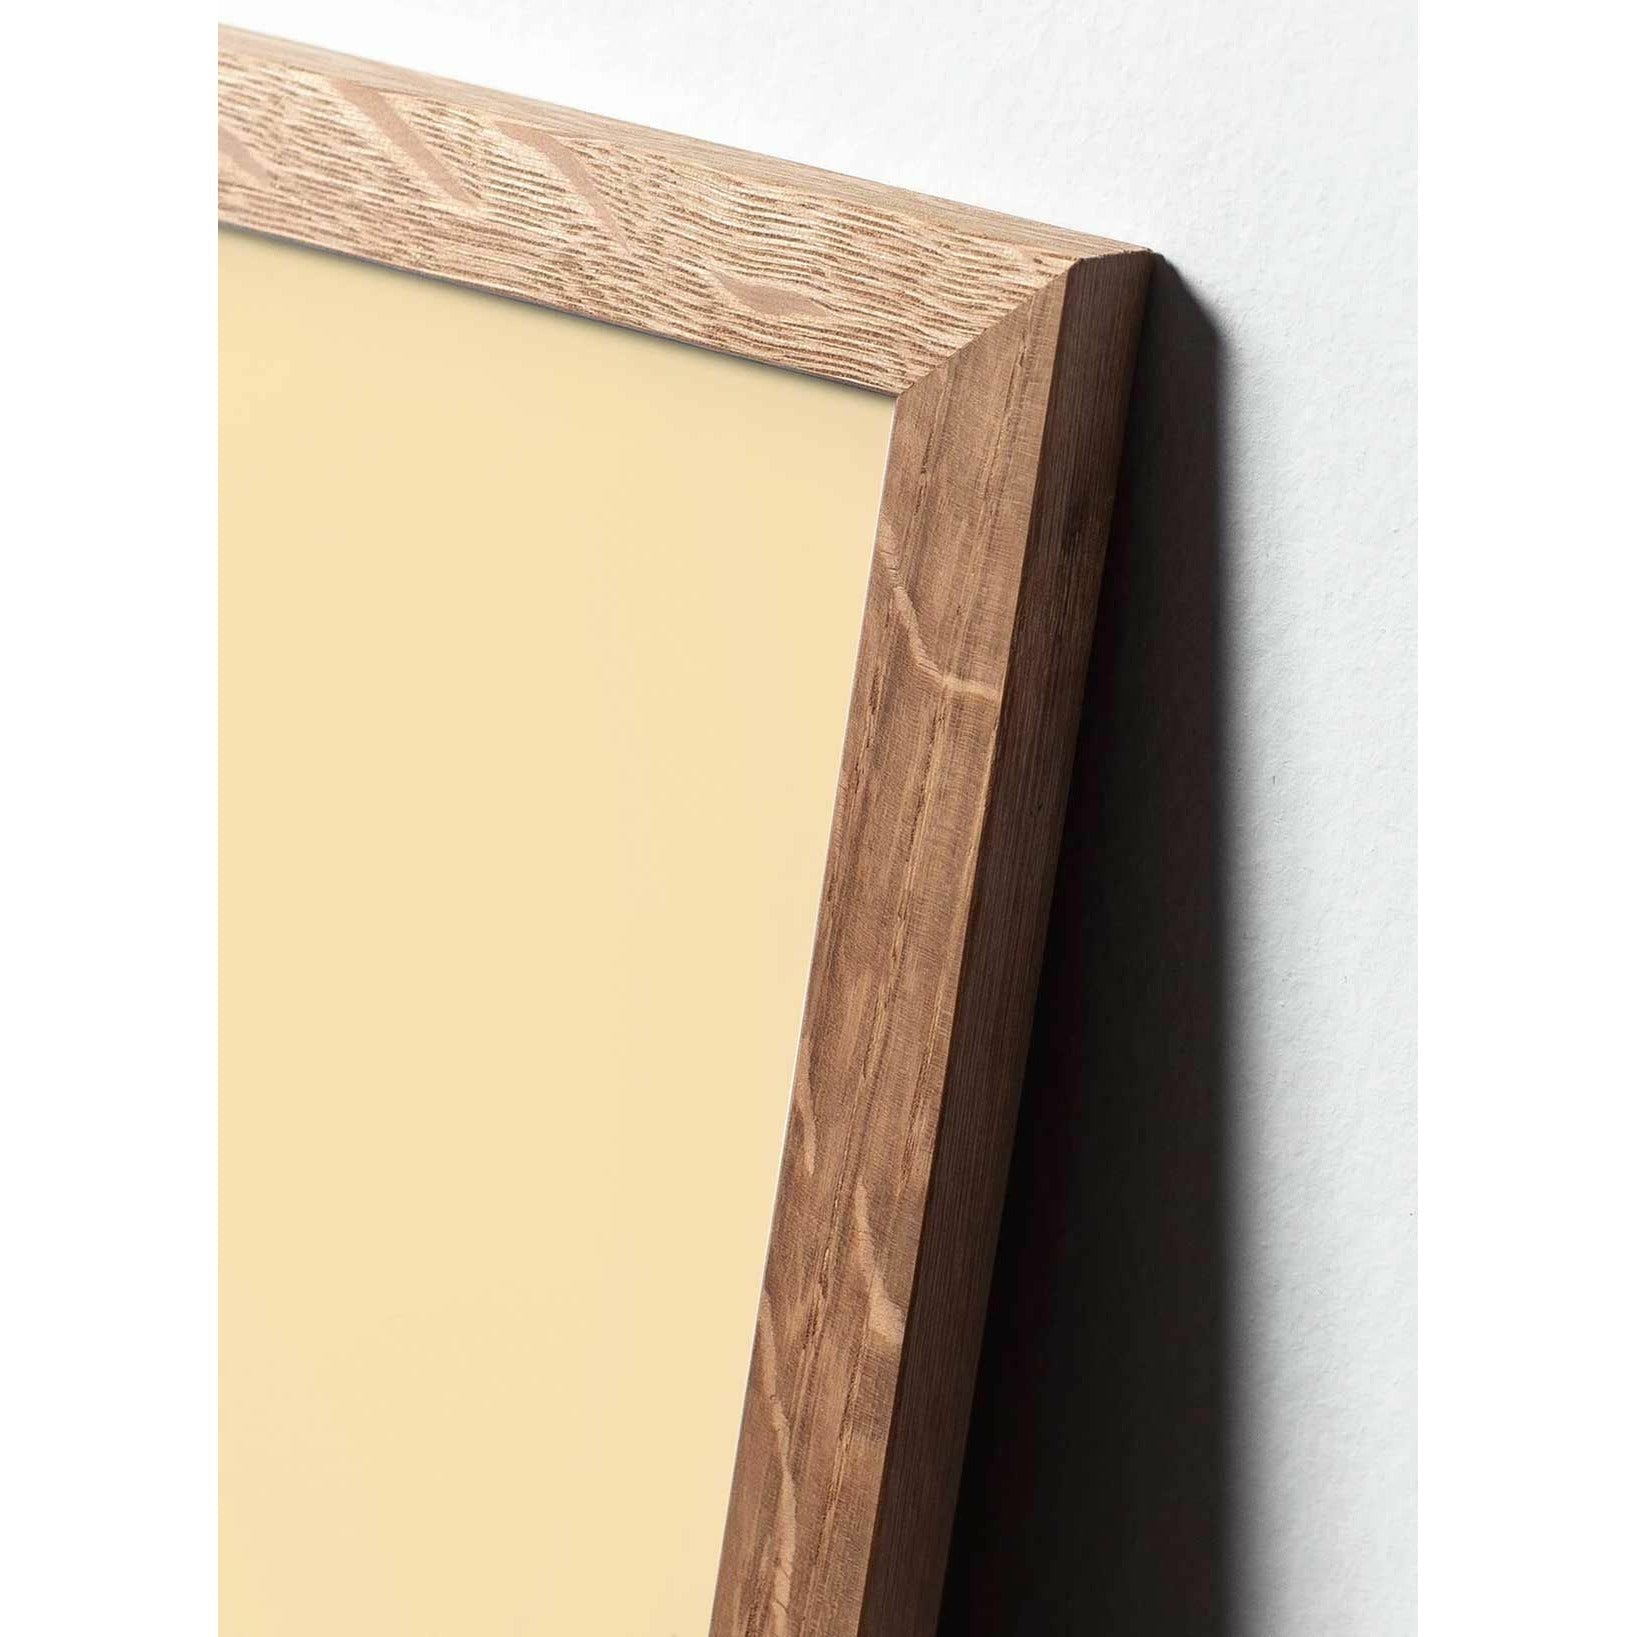 Plakát Pine Cone Line Pine Cone, rám vyrobený z lehkého dřeva 30x40 cm, bílé pozadí